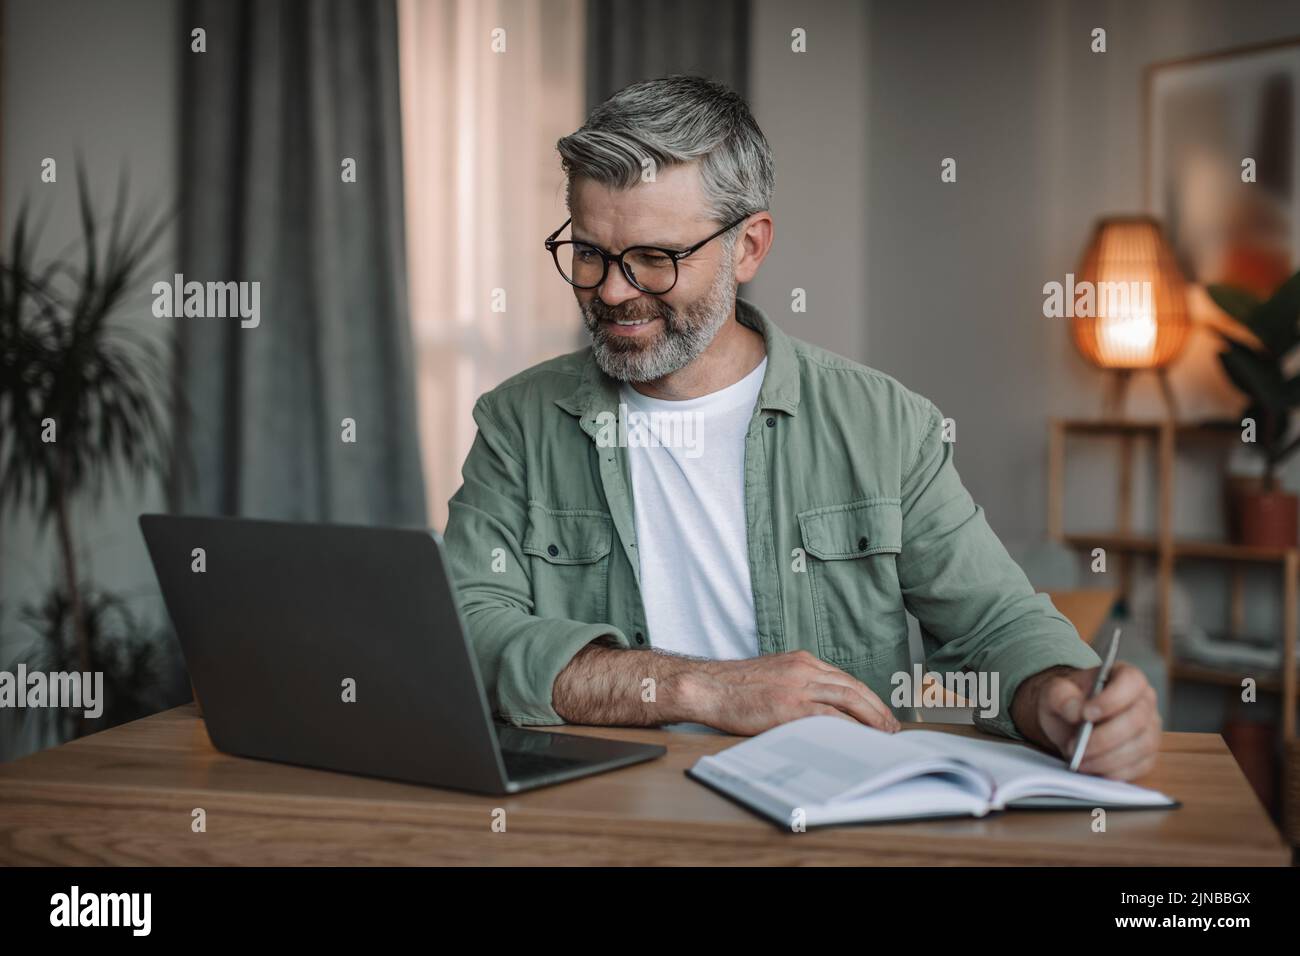 Alegre hombre europeo senior con barba en gafas, mira el vídeo en el ordenador, toma notas en la mesa de la habitación Foto de stock